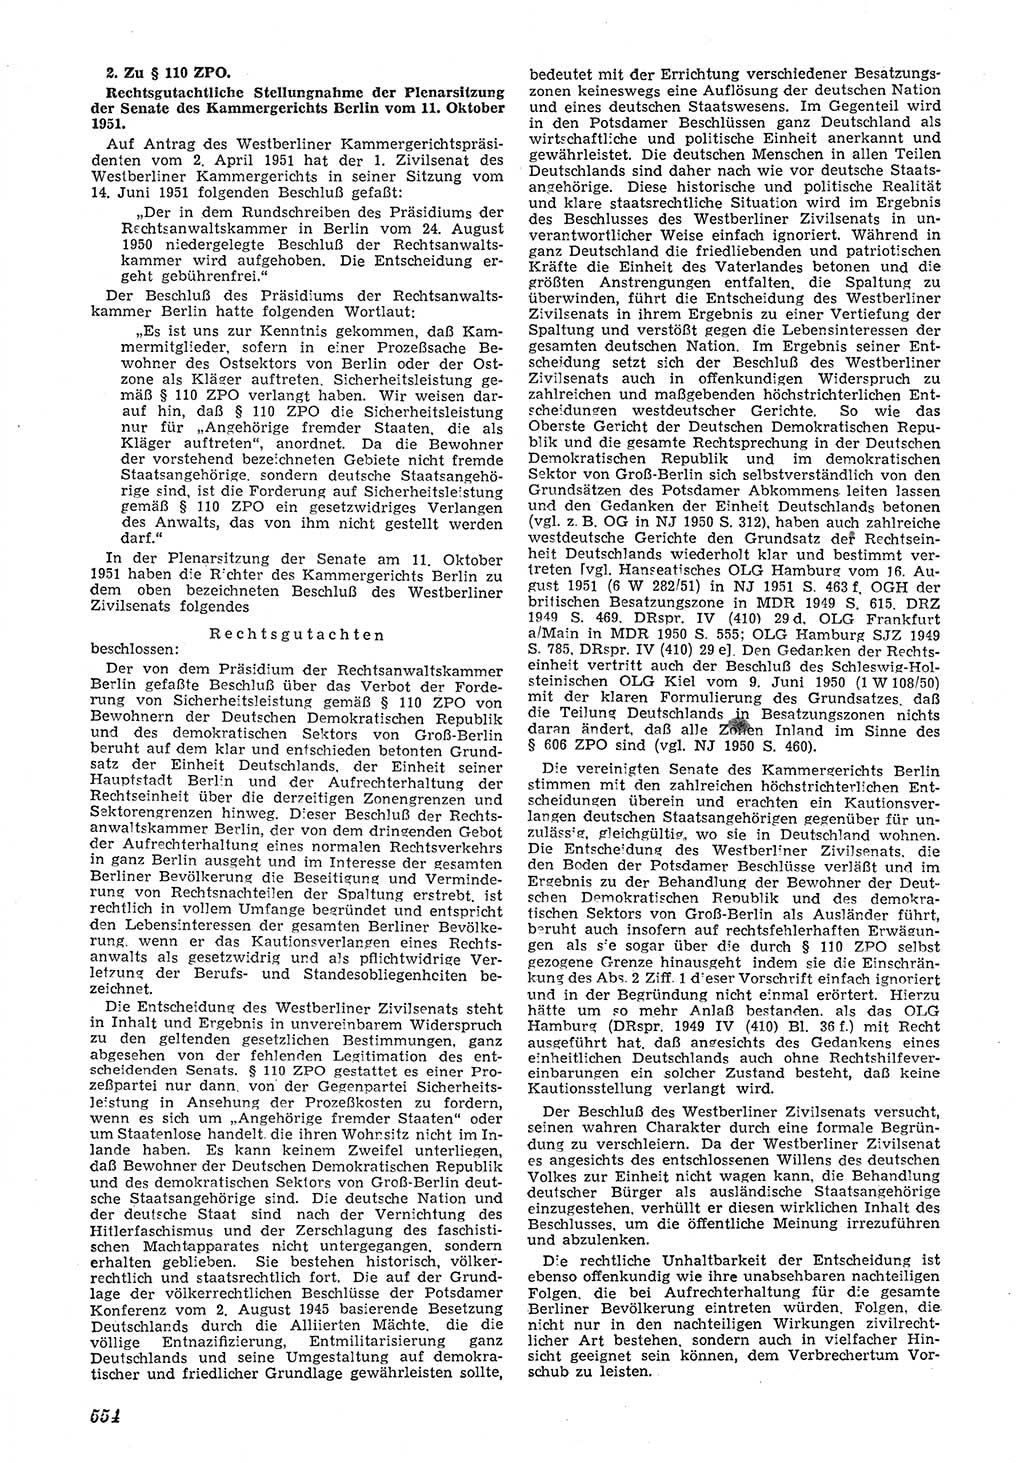 Neue Justiz (NJ), Zeitschrift für Recht und Rechtswissenschaft [Deutsche Demokratische Republik (DDR)], 5. Jahrgang 1951, Seite 554 (NJ DDR 1951, S. 554)